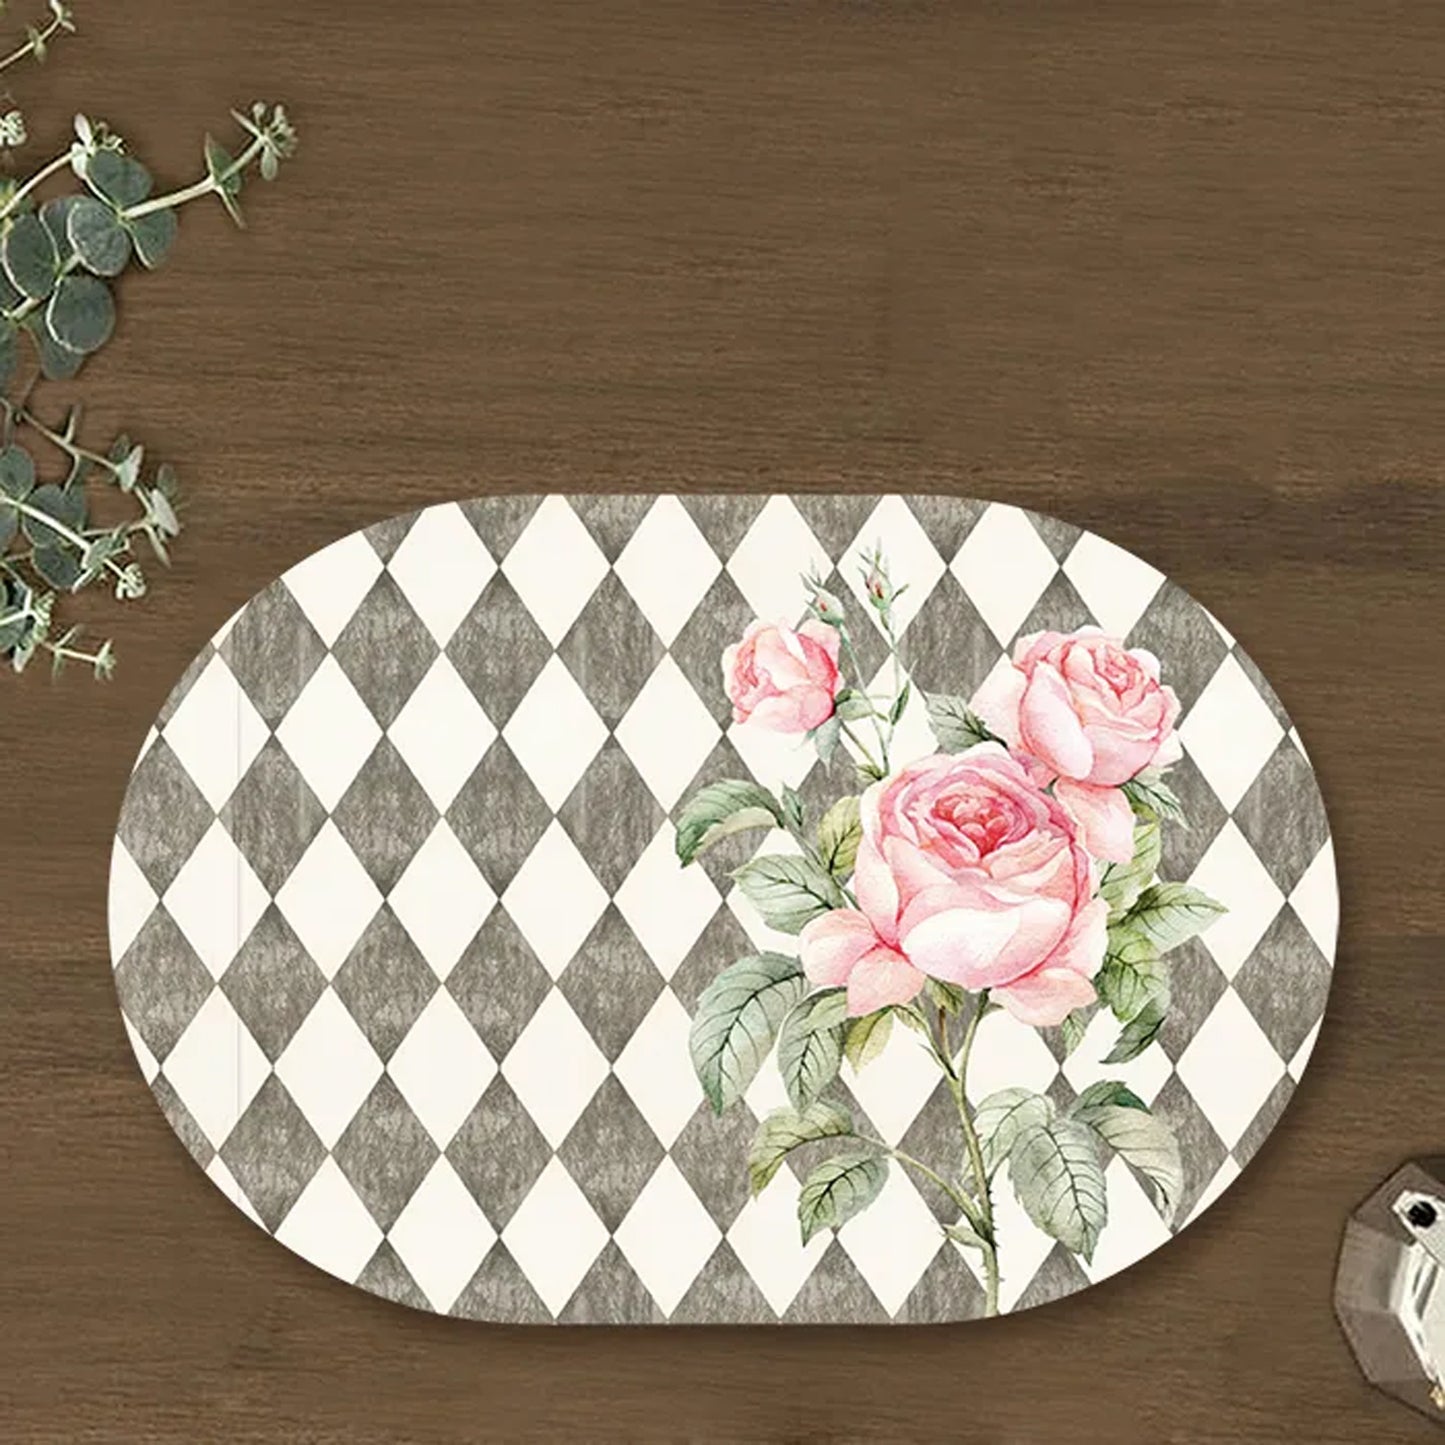 Pink Roses on Vintage Background Tablemats | TM 093 (set of 2)